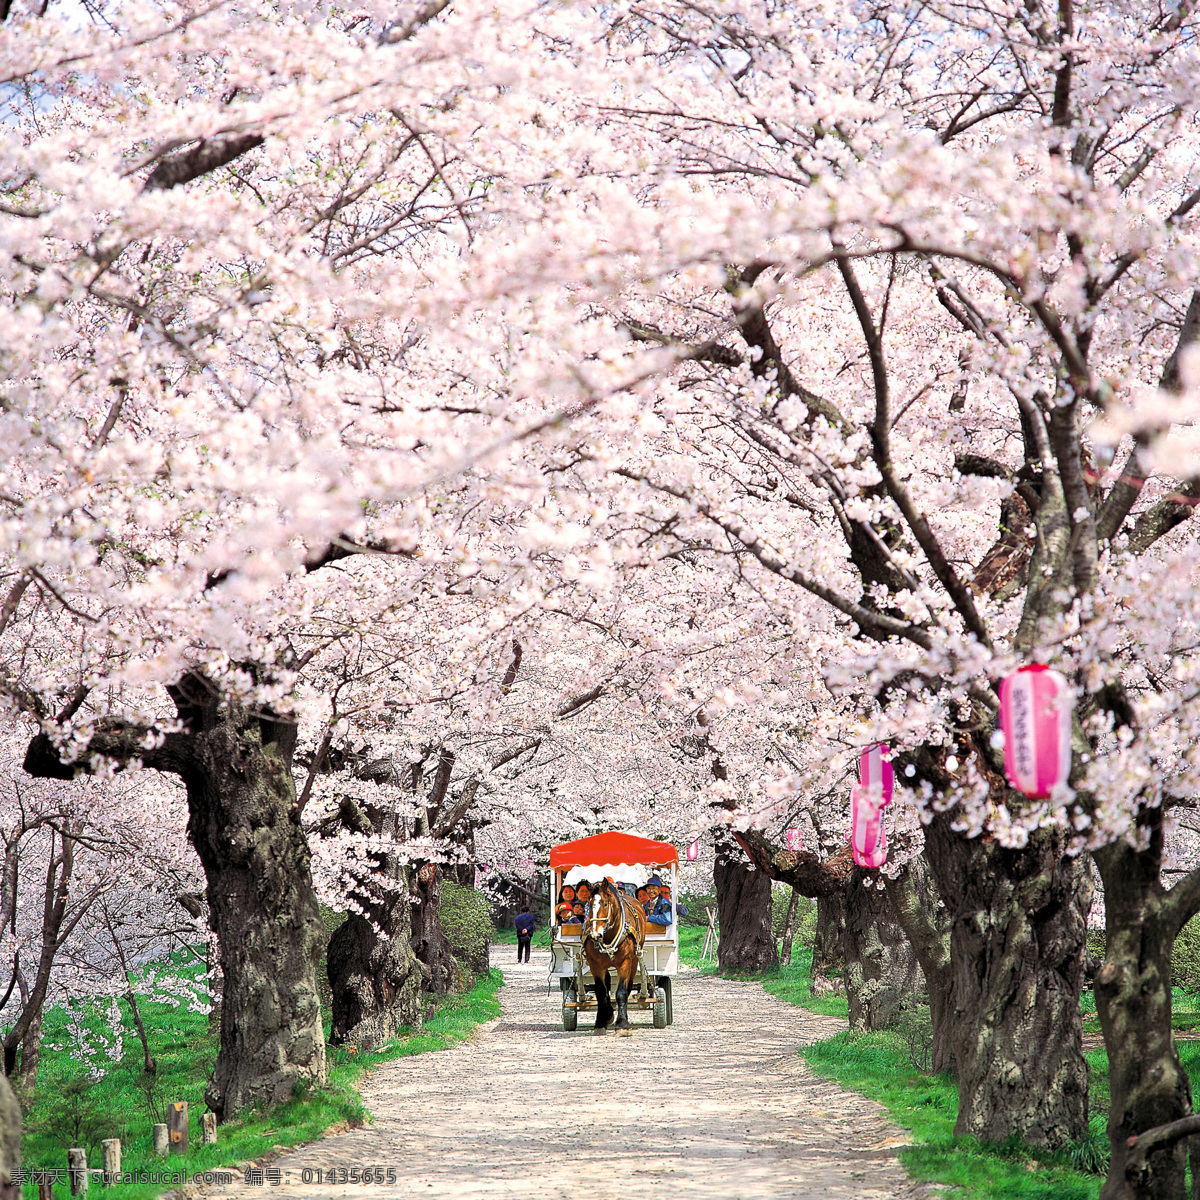 樱花 美景 美景图片 樱花树图片 樱花图片 日本樱花图片 樱花马路 大自然美景